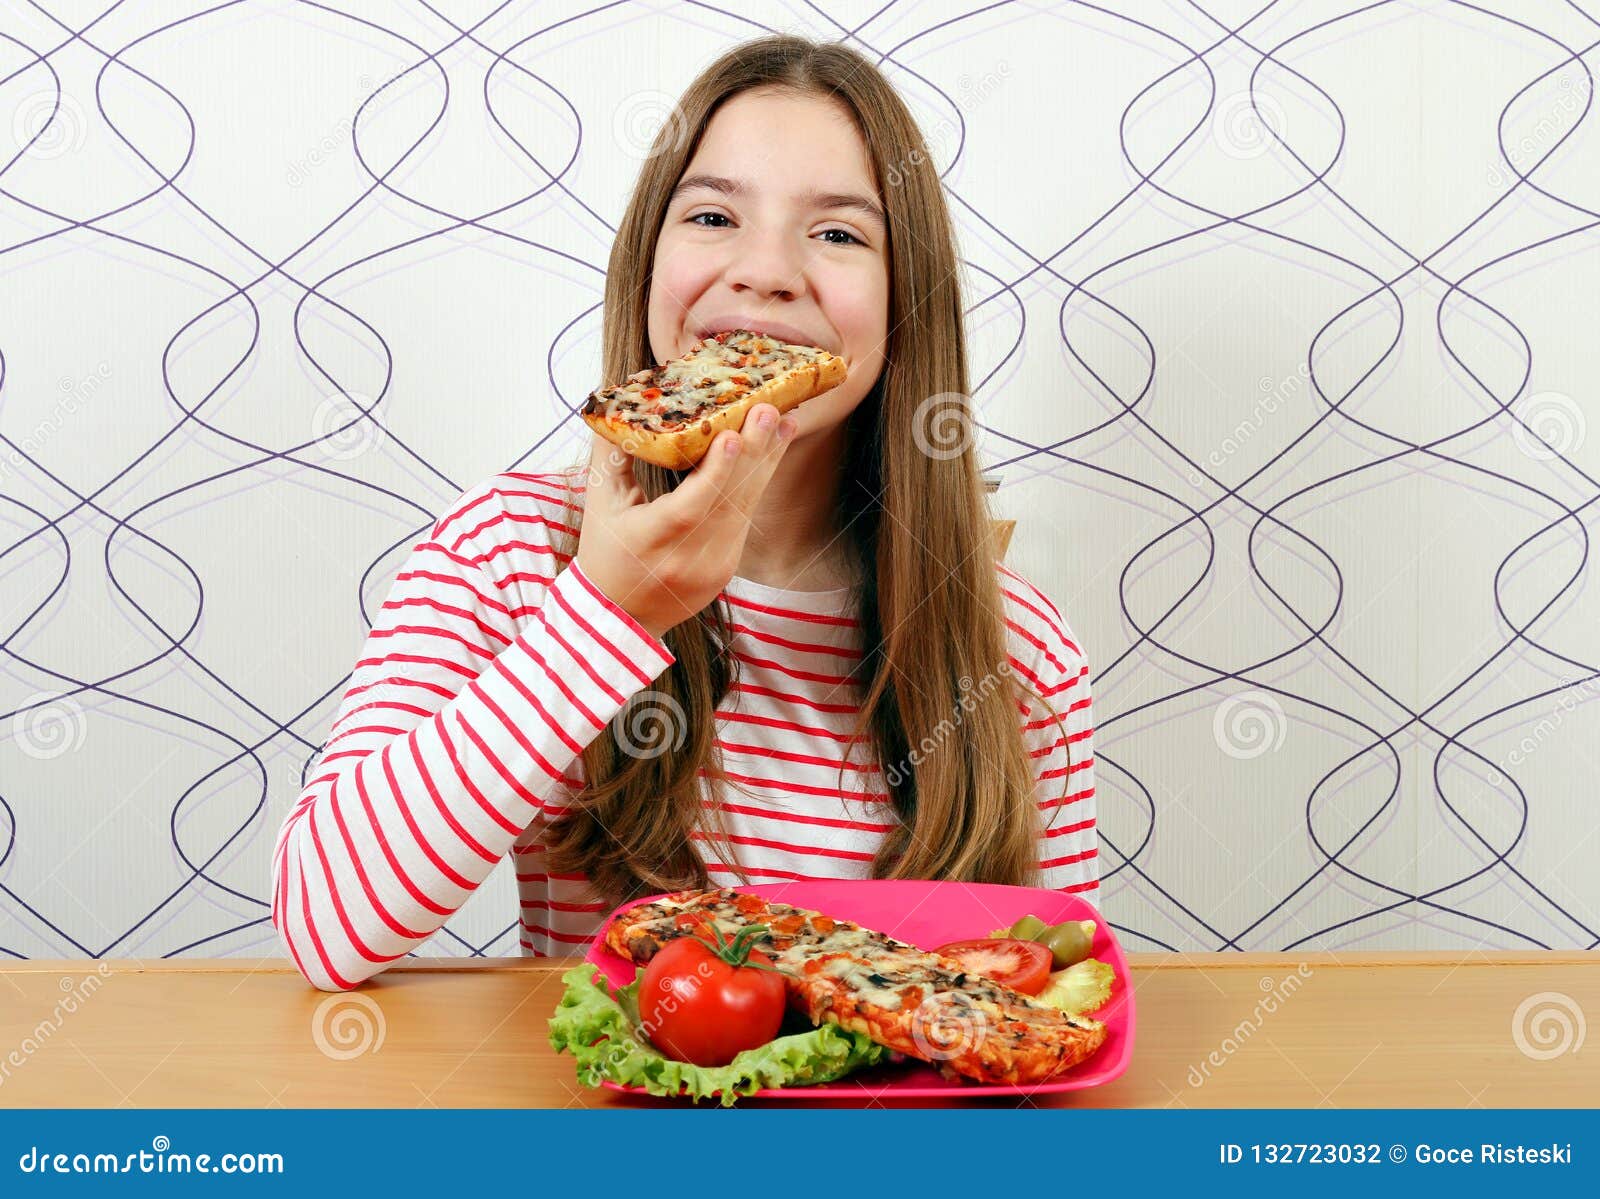 Голодные подростки. Голодная девушка. Голодная девушка ест. Подросток кушает. Фото голодной девочки.